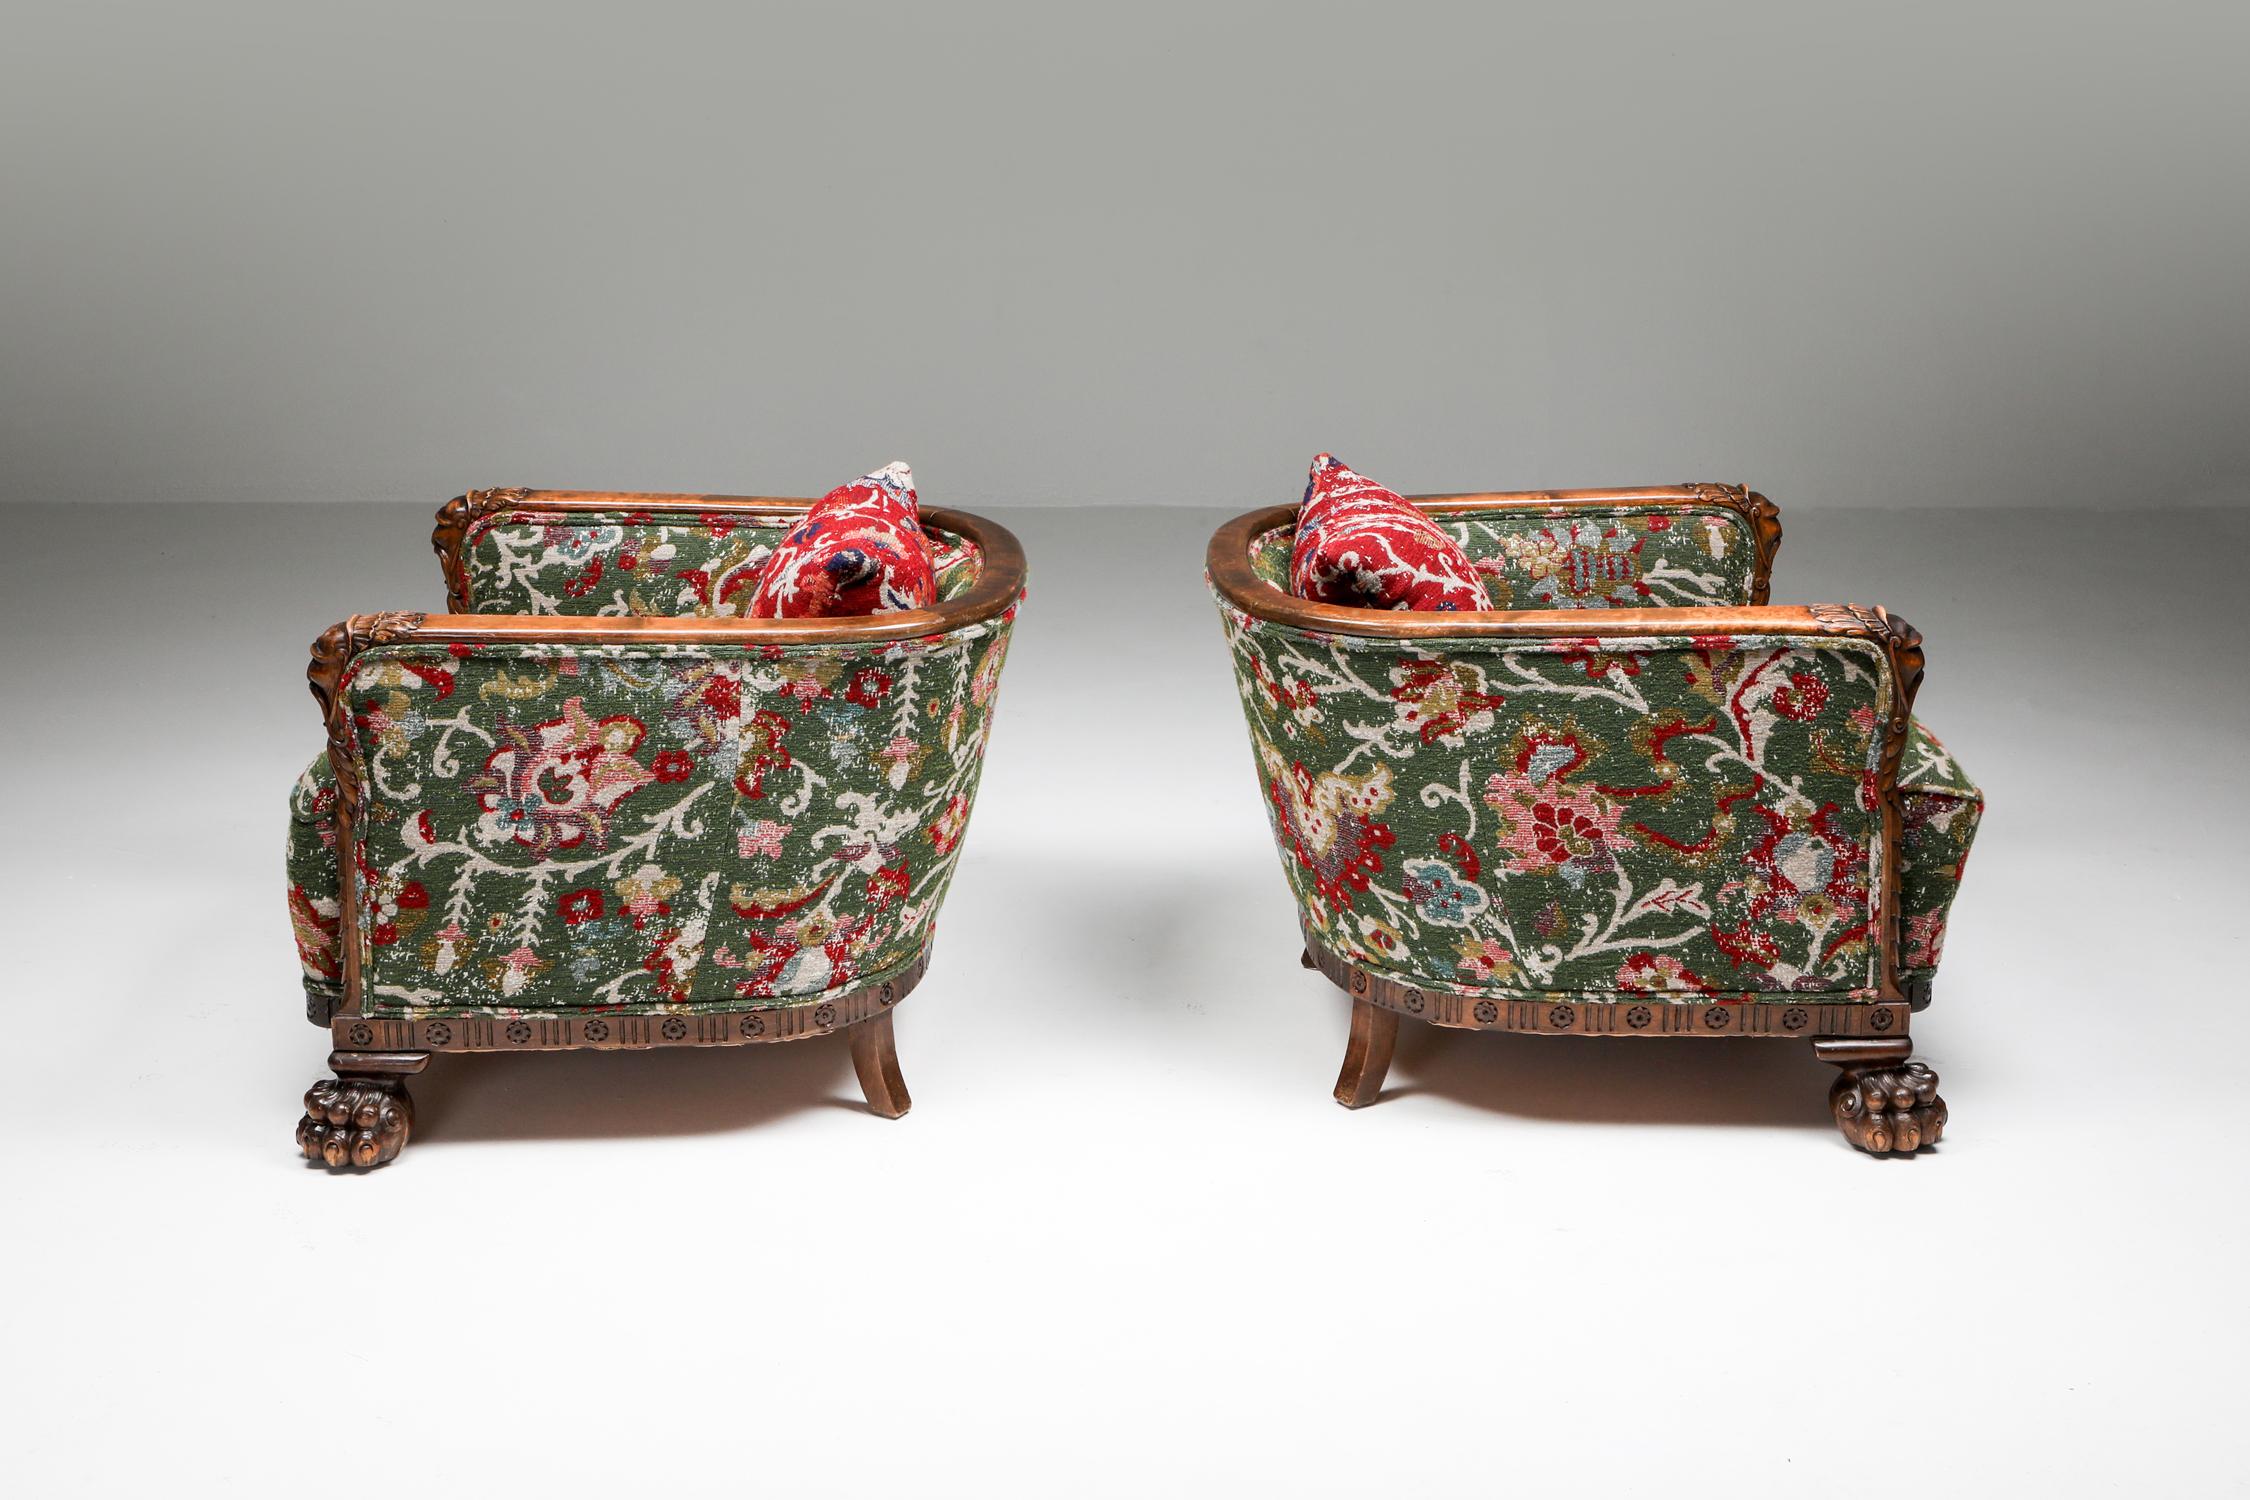 Chateau-Stil Chippendale-Möbel mit orientalischen Ornamenten.

Neu gepolstert mit Pierre Frey 
Der neue Stoff, ein Perserteppich, der als Wolljacquard neu interpretiert wurde, zeigt fein gewellte Rahmen, die mit den sanften Auswirkungen der Zeit